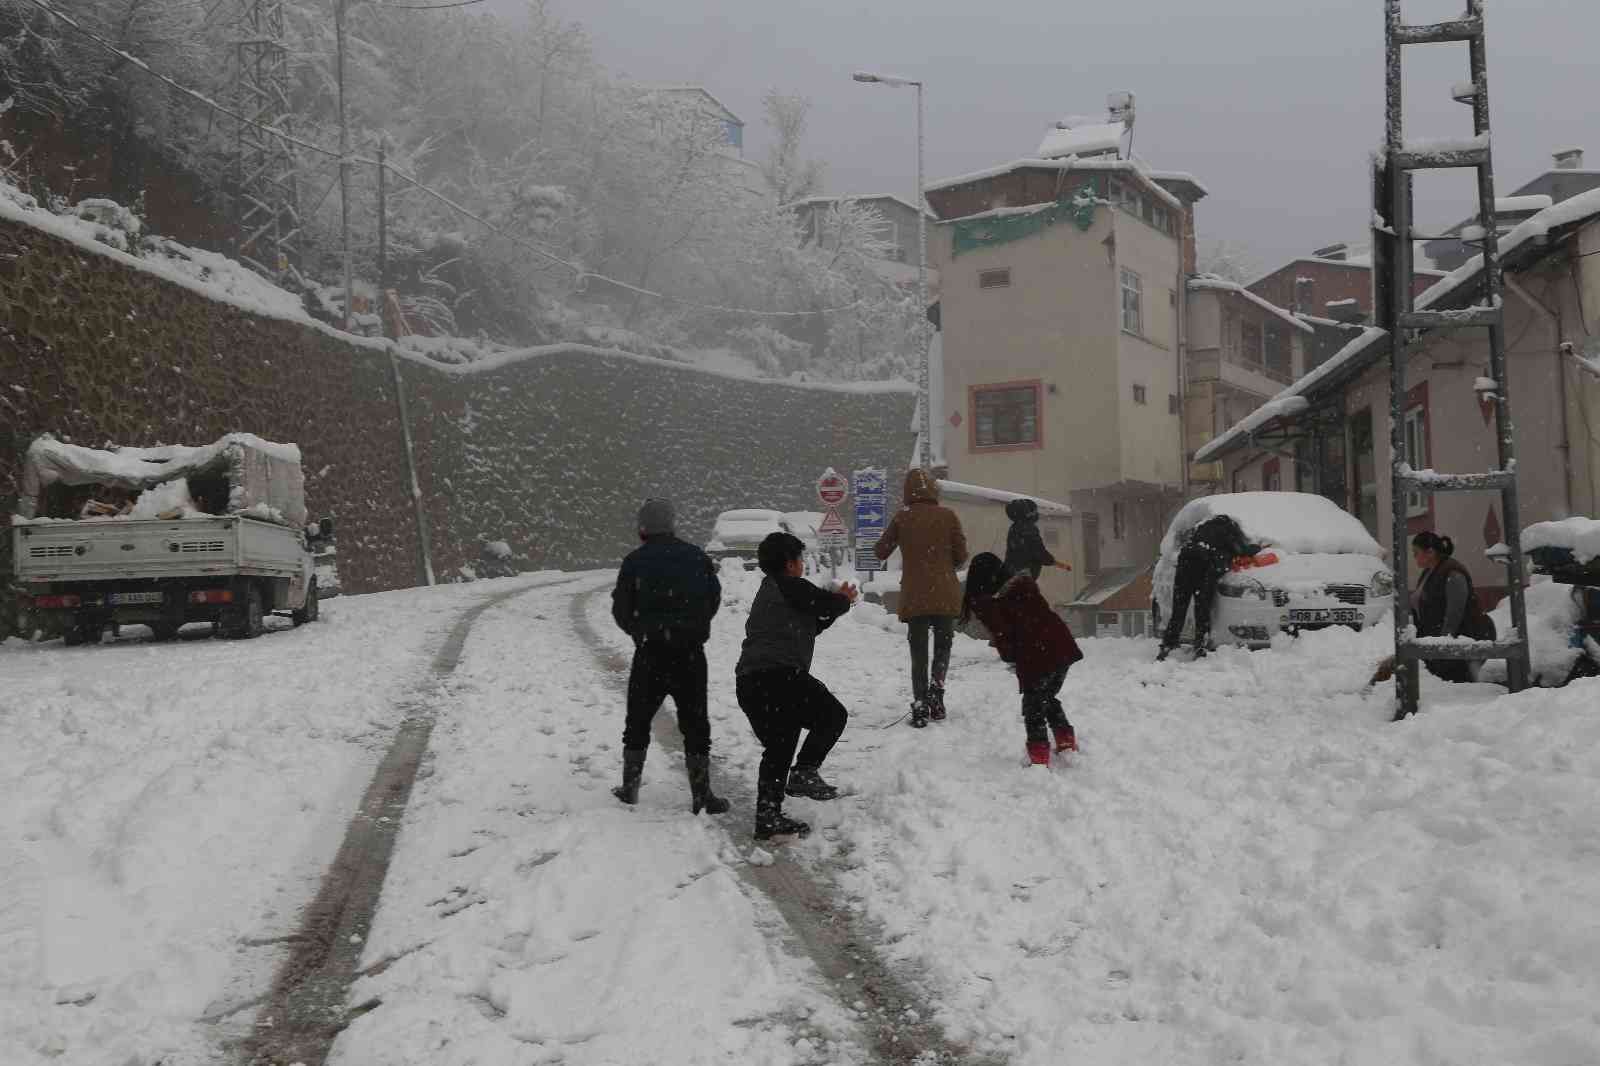 Artvin’de kar yağışı nedeniyle 125 köy yolu ulaşıma kapandı #artvin